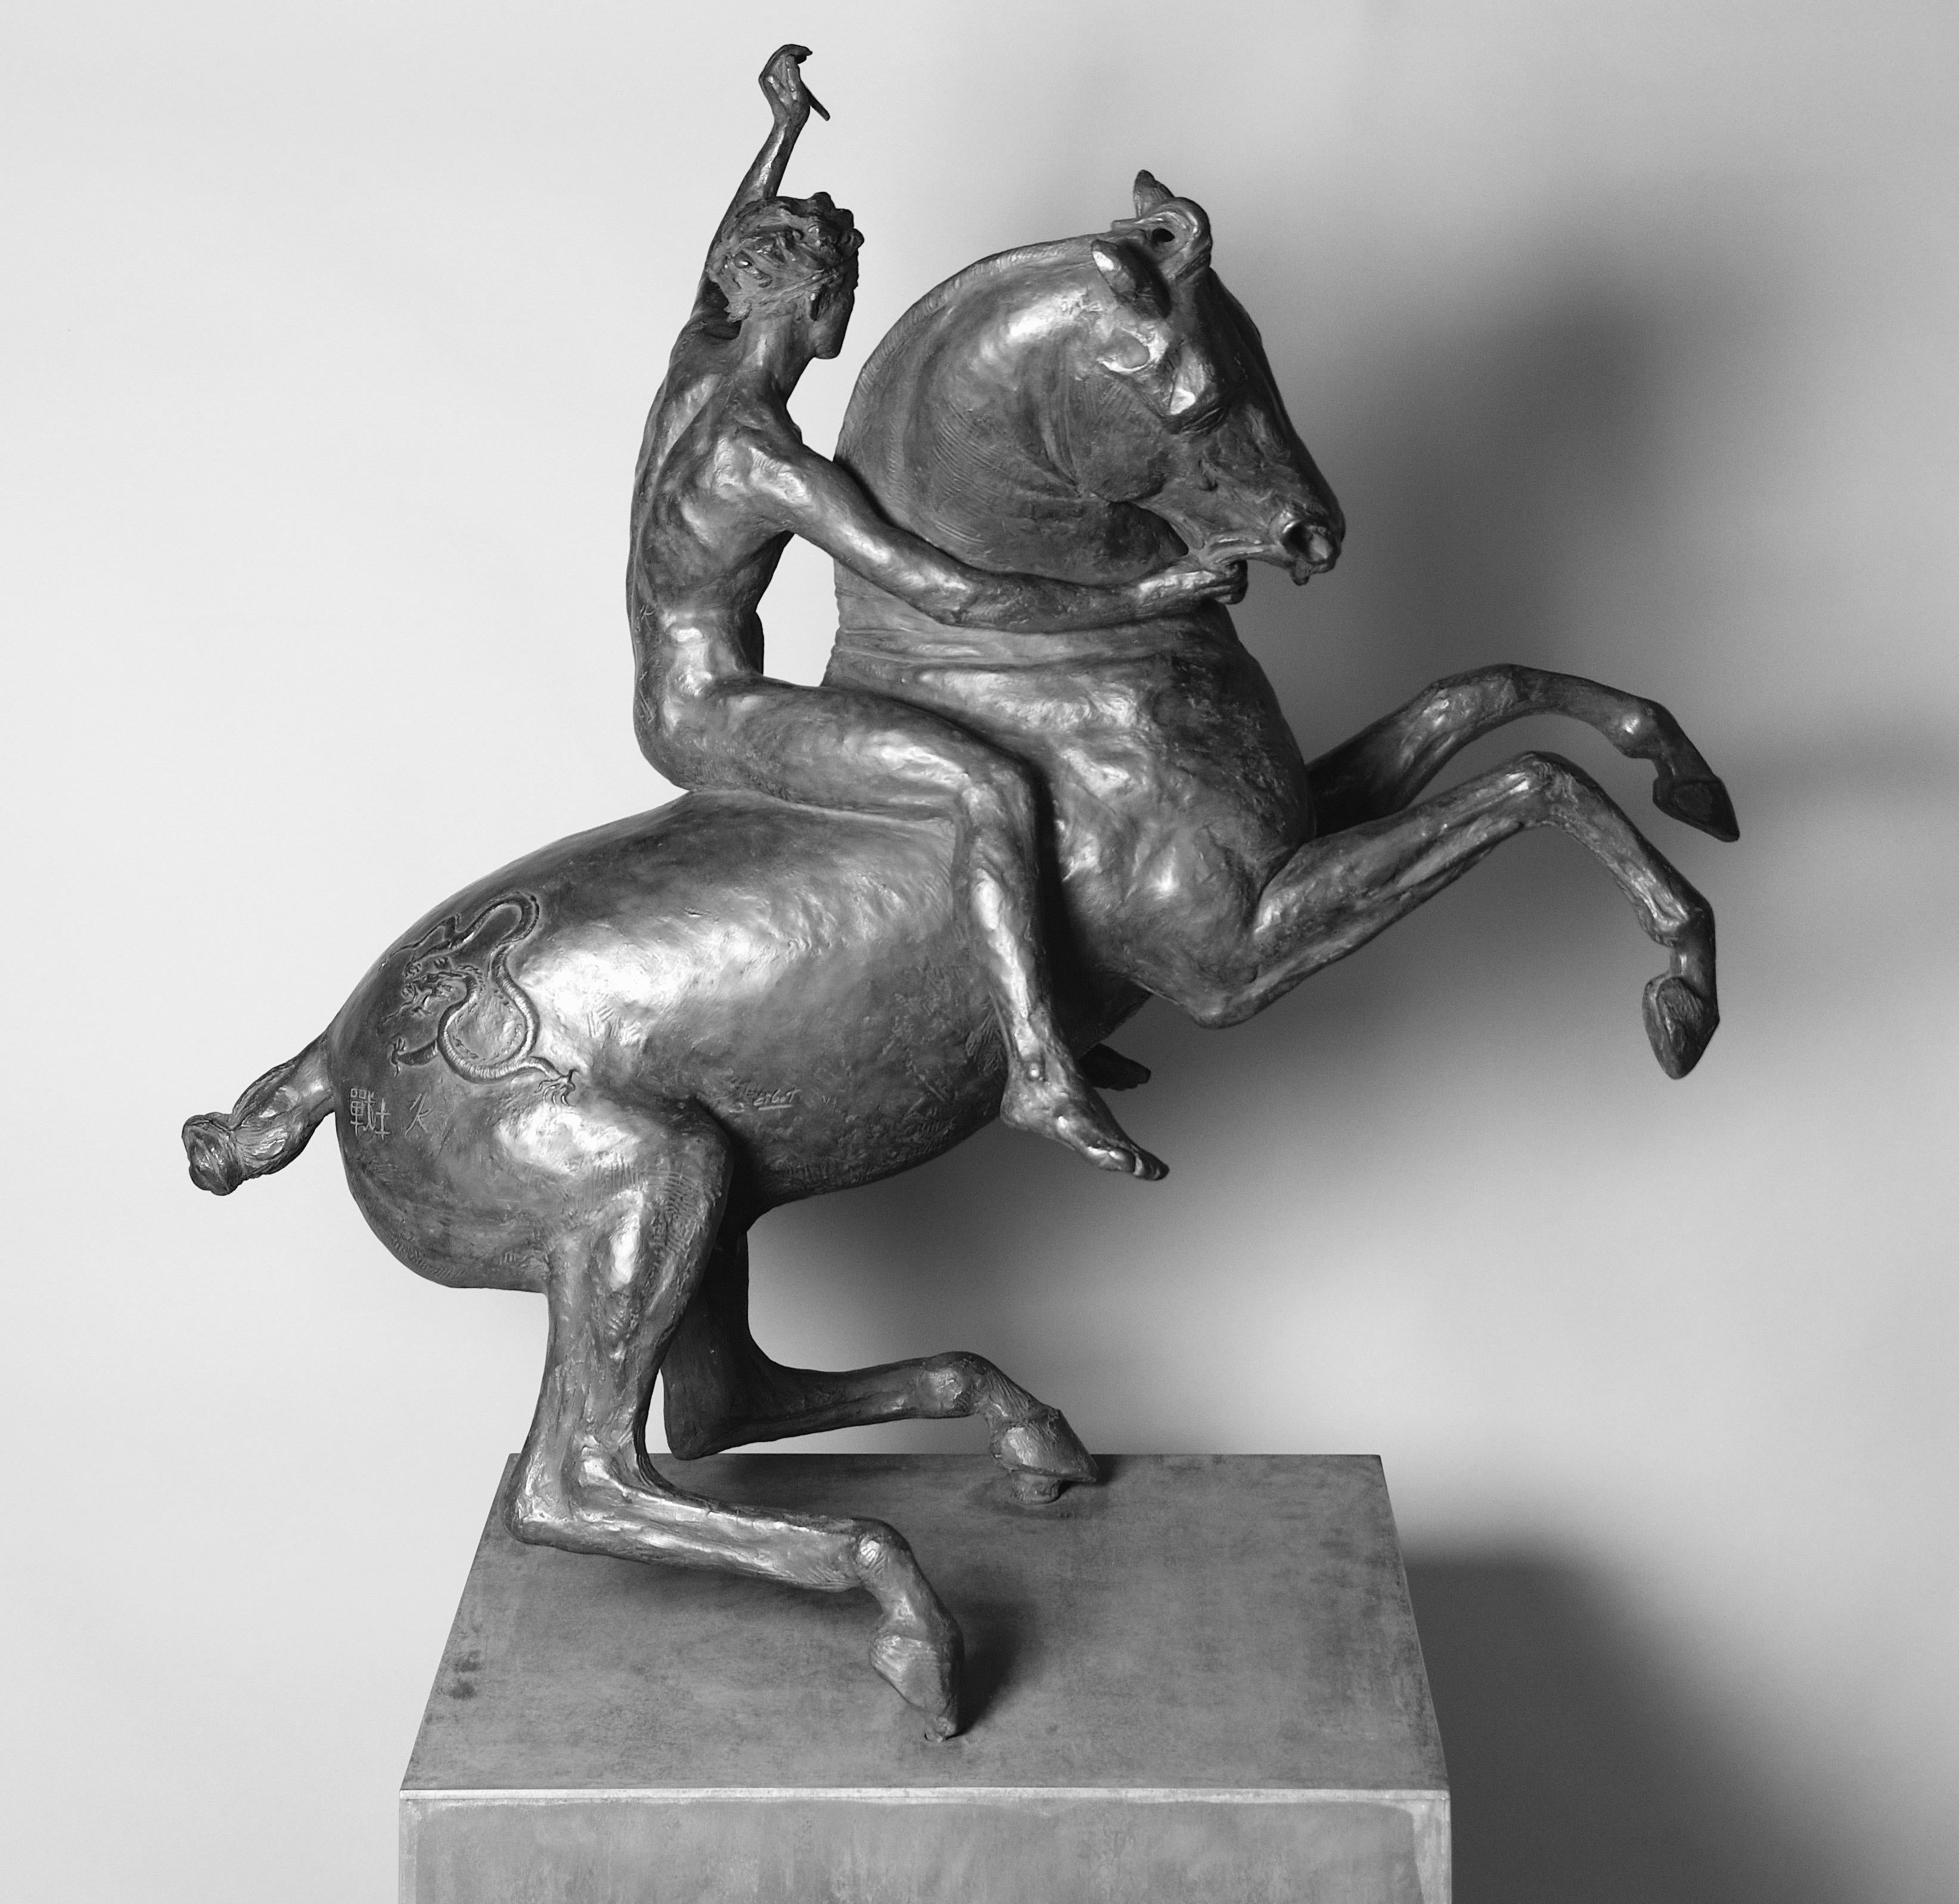  Bronze  1/3 de la base en acier Korten patiné noir ou doré à la feuille sortie
  sculpture sur roues, gravure au jet d'eau d'une cartouche codée QR.
 Née en 1960 dans une famille d'artistes collectionnant les bronzes de la Renaissance italienne, la